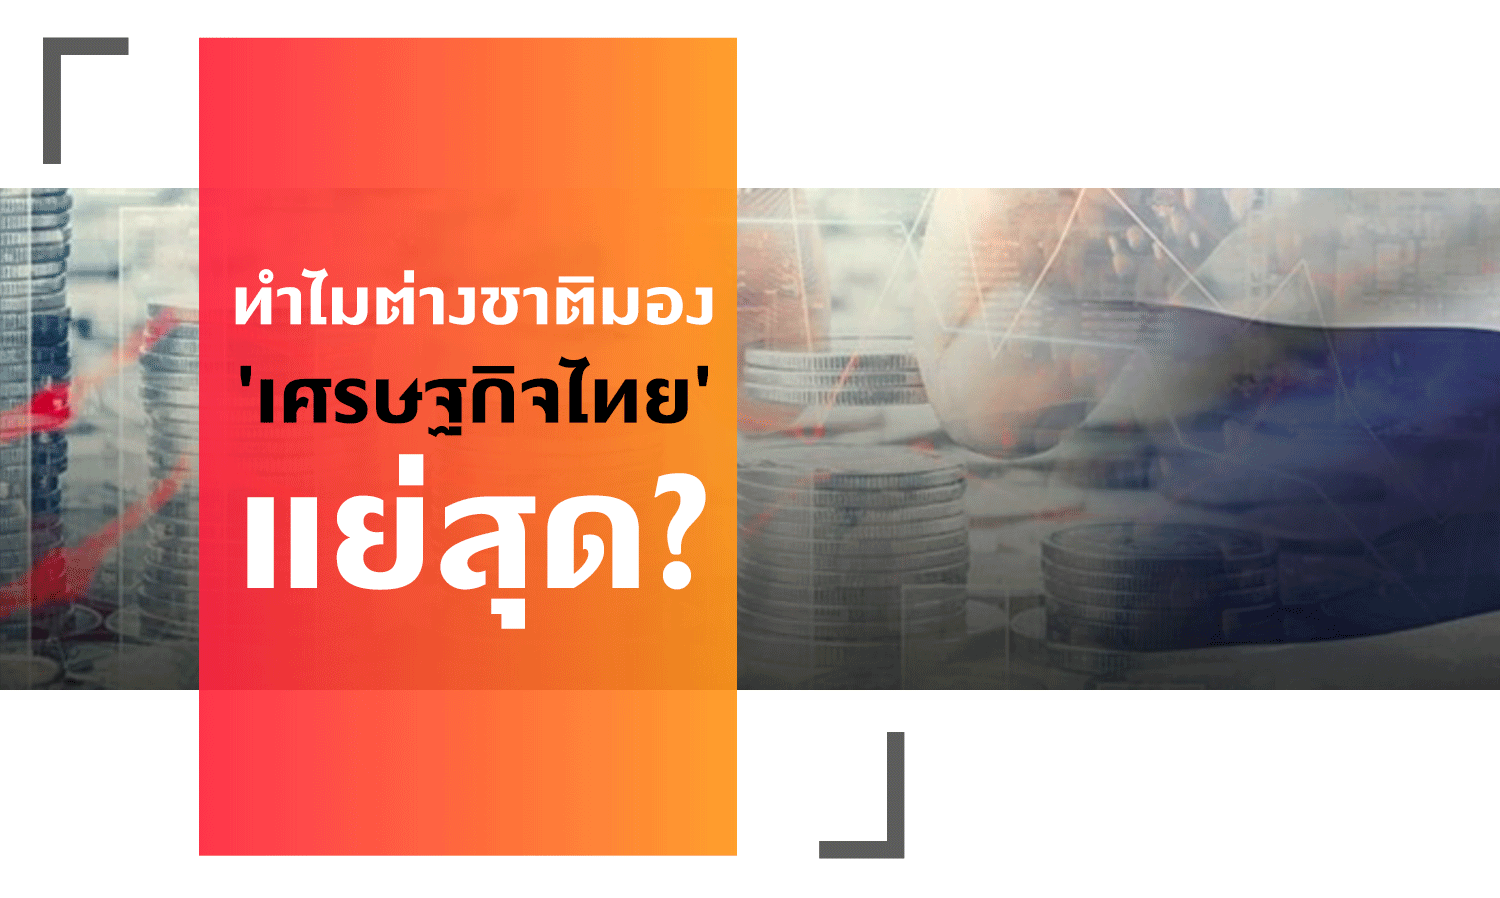 ทำไมต่างชาติมอง 'เศรษฐกิจไทย' แย่สุด?